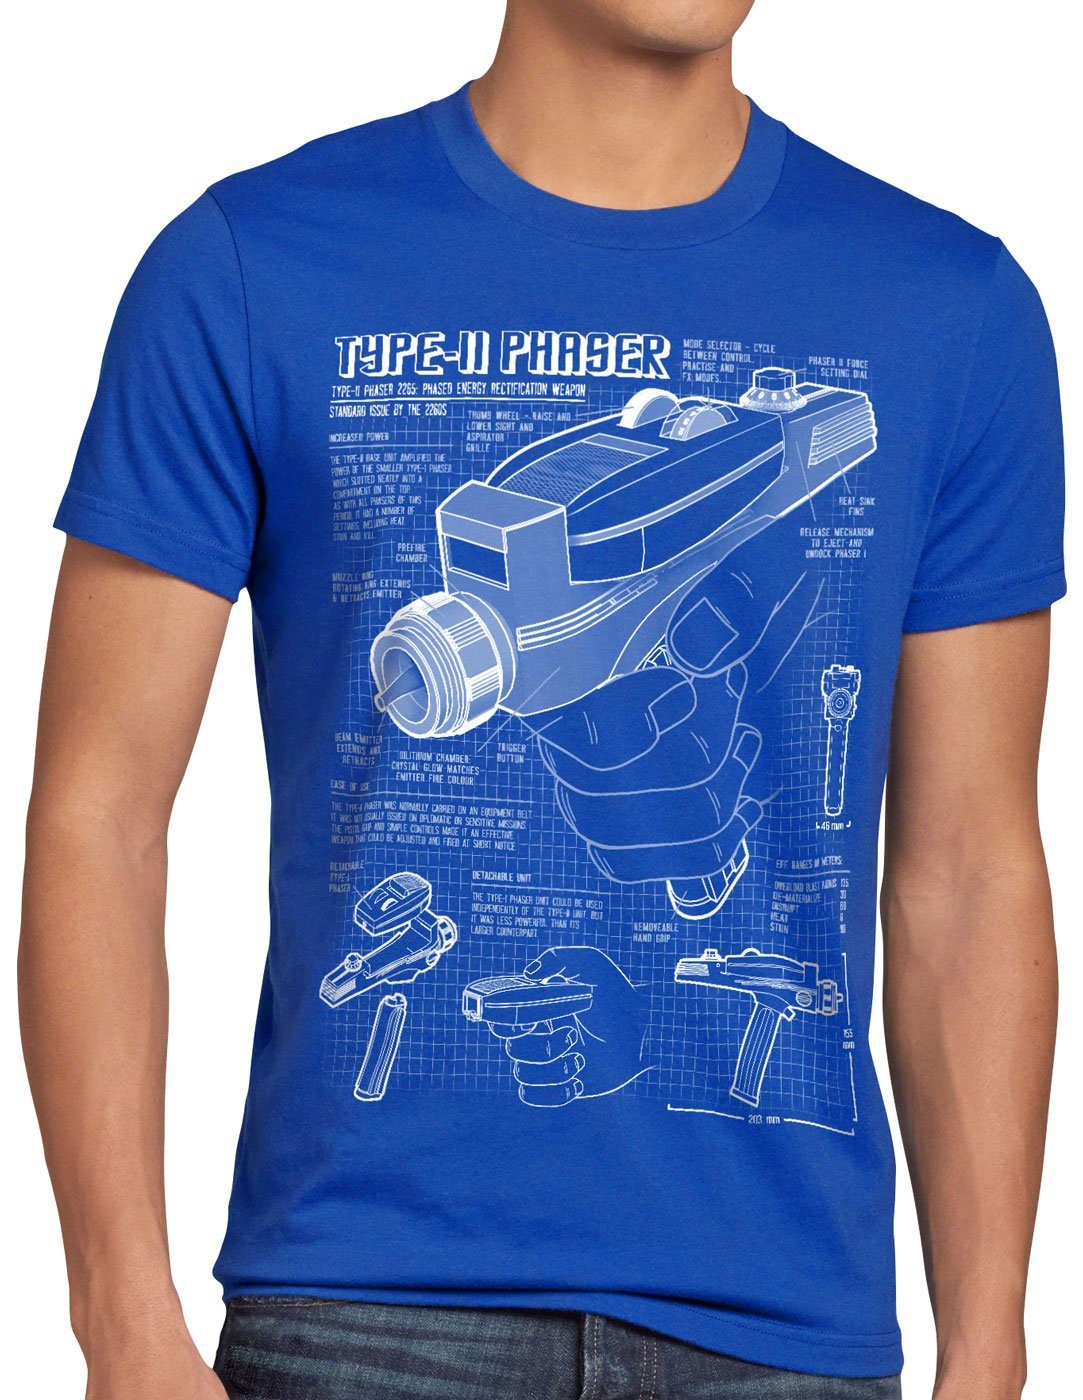 style3 Print-Shirt Herren T-Shirt Phaser 2265 Blaupause NCC-1701 trek trekkie star